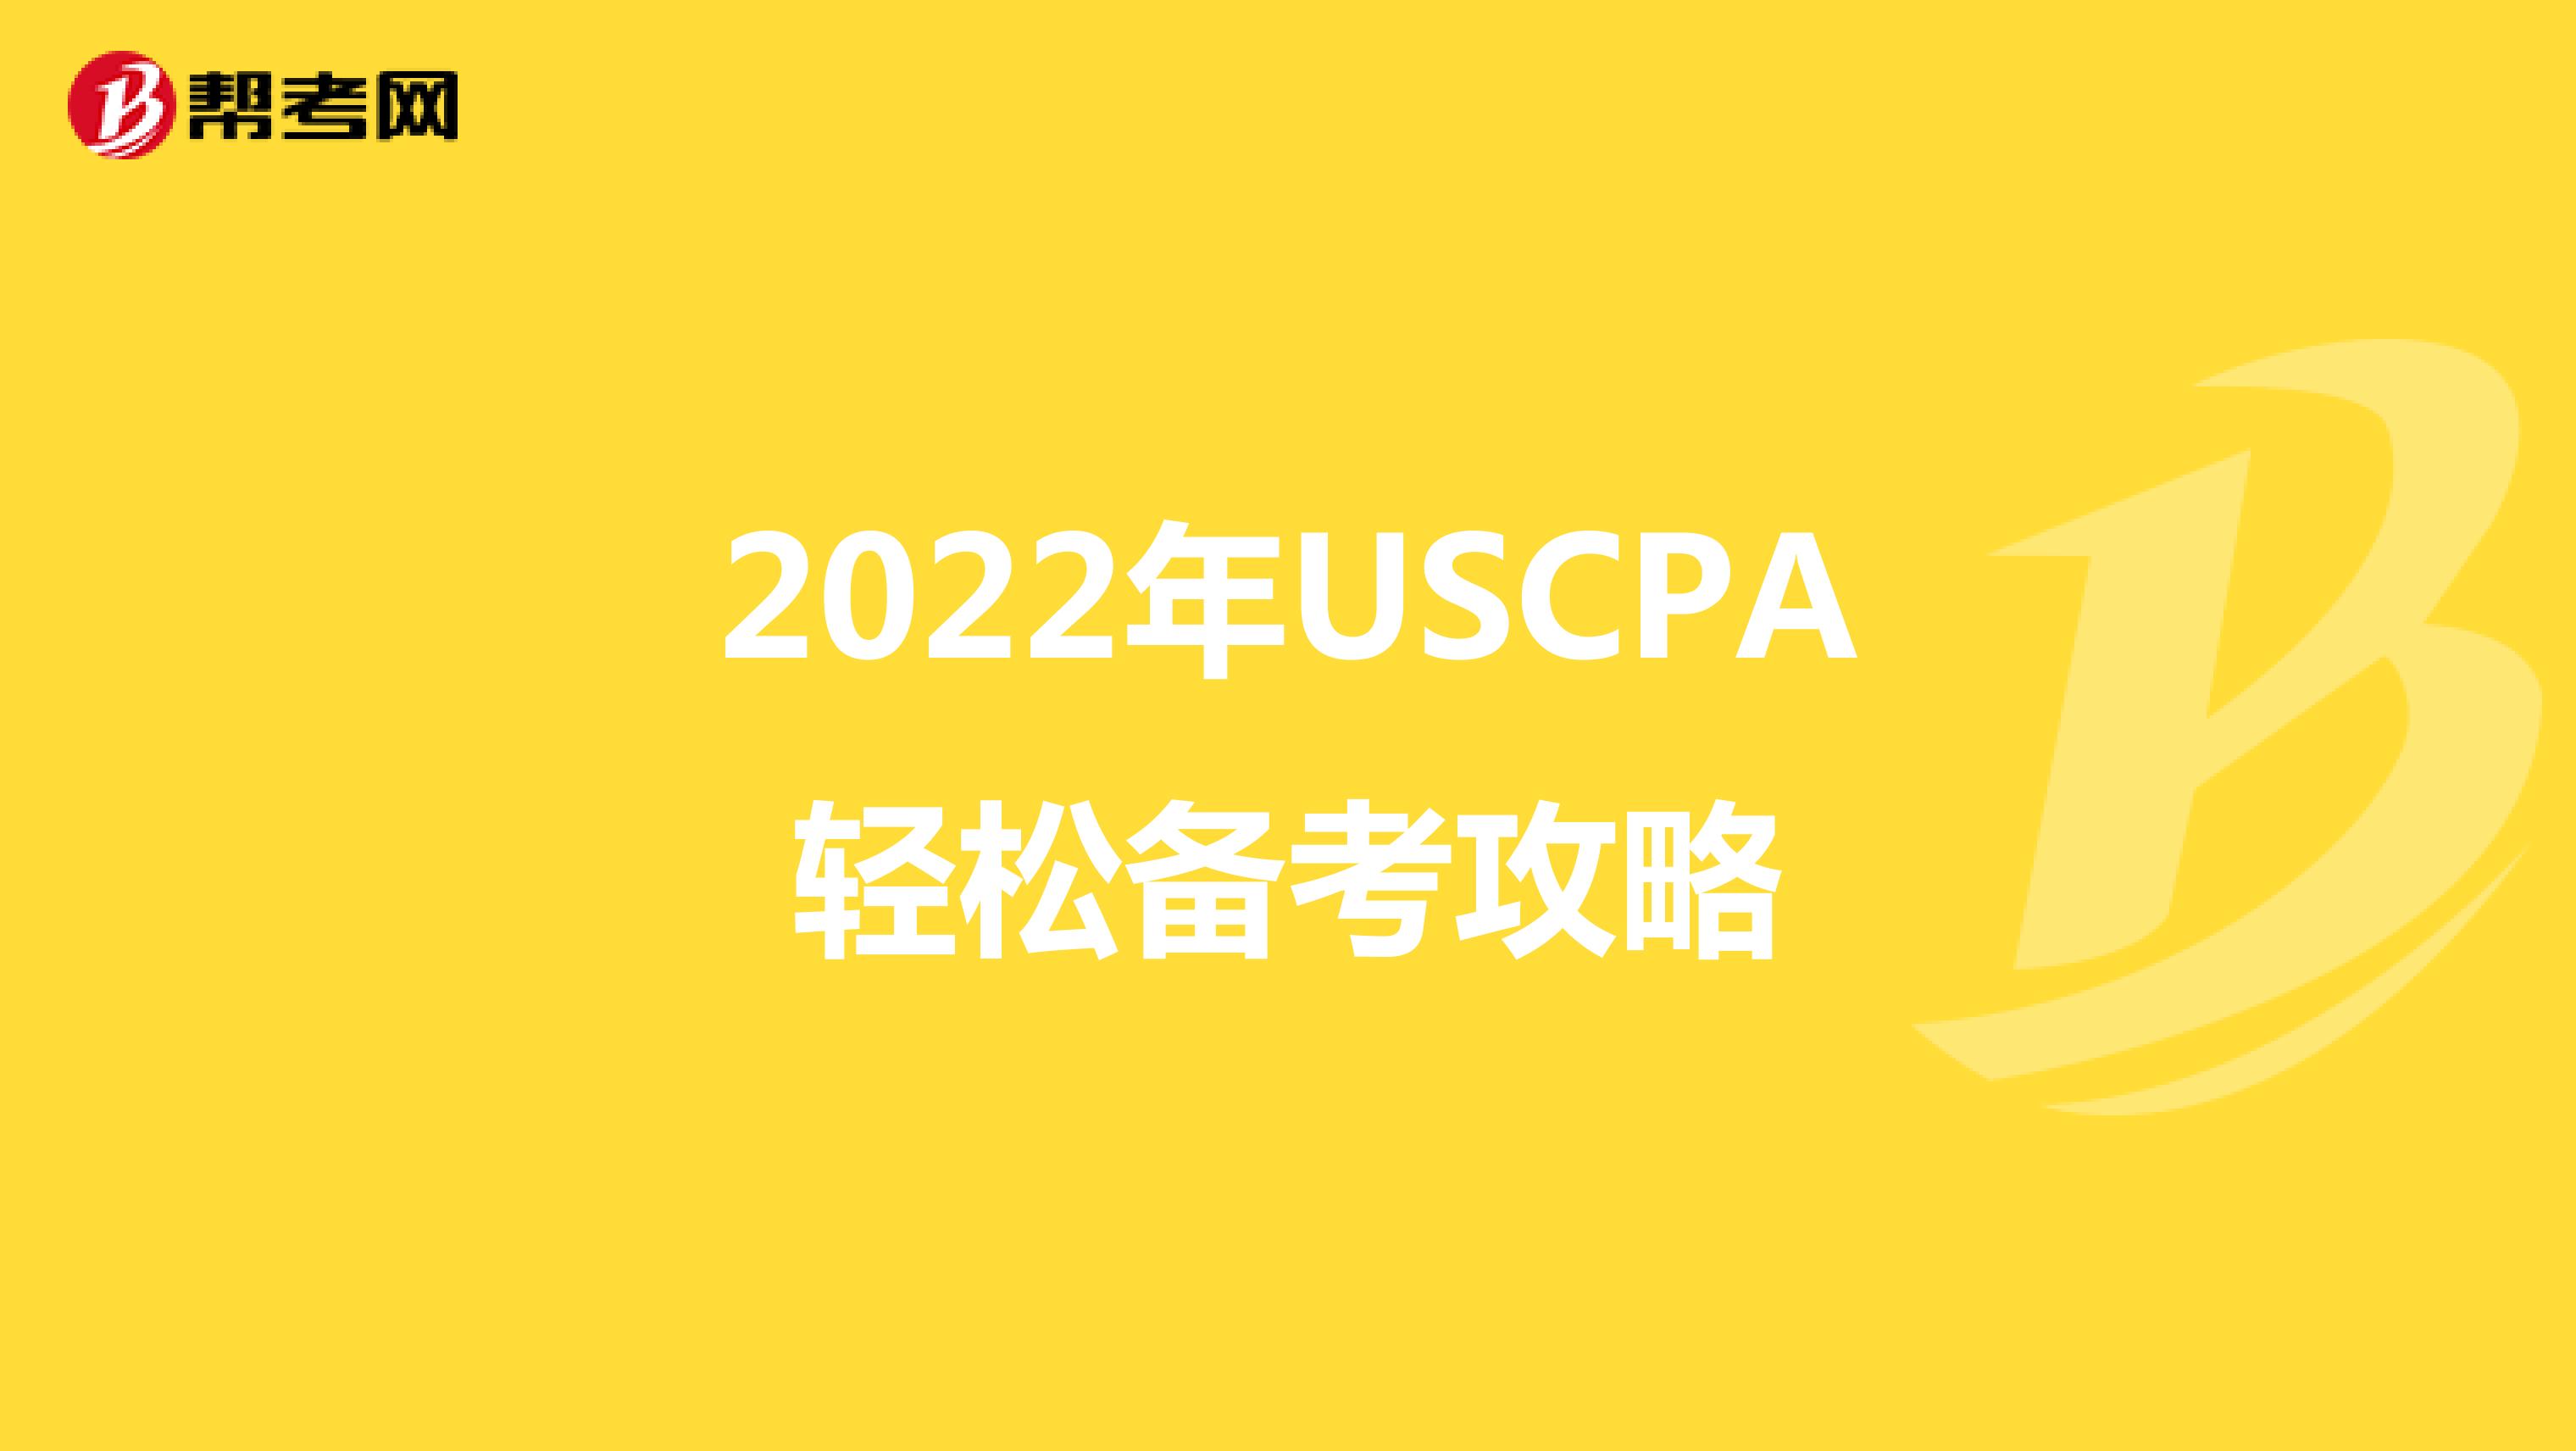 2022年USCPA轻松备考攻略